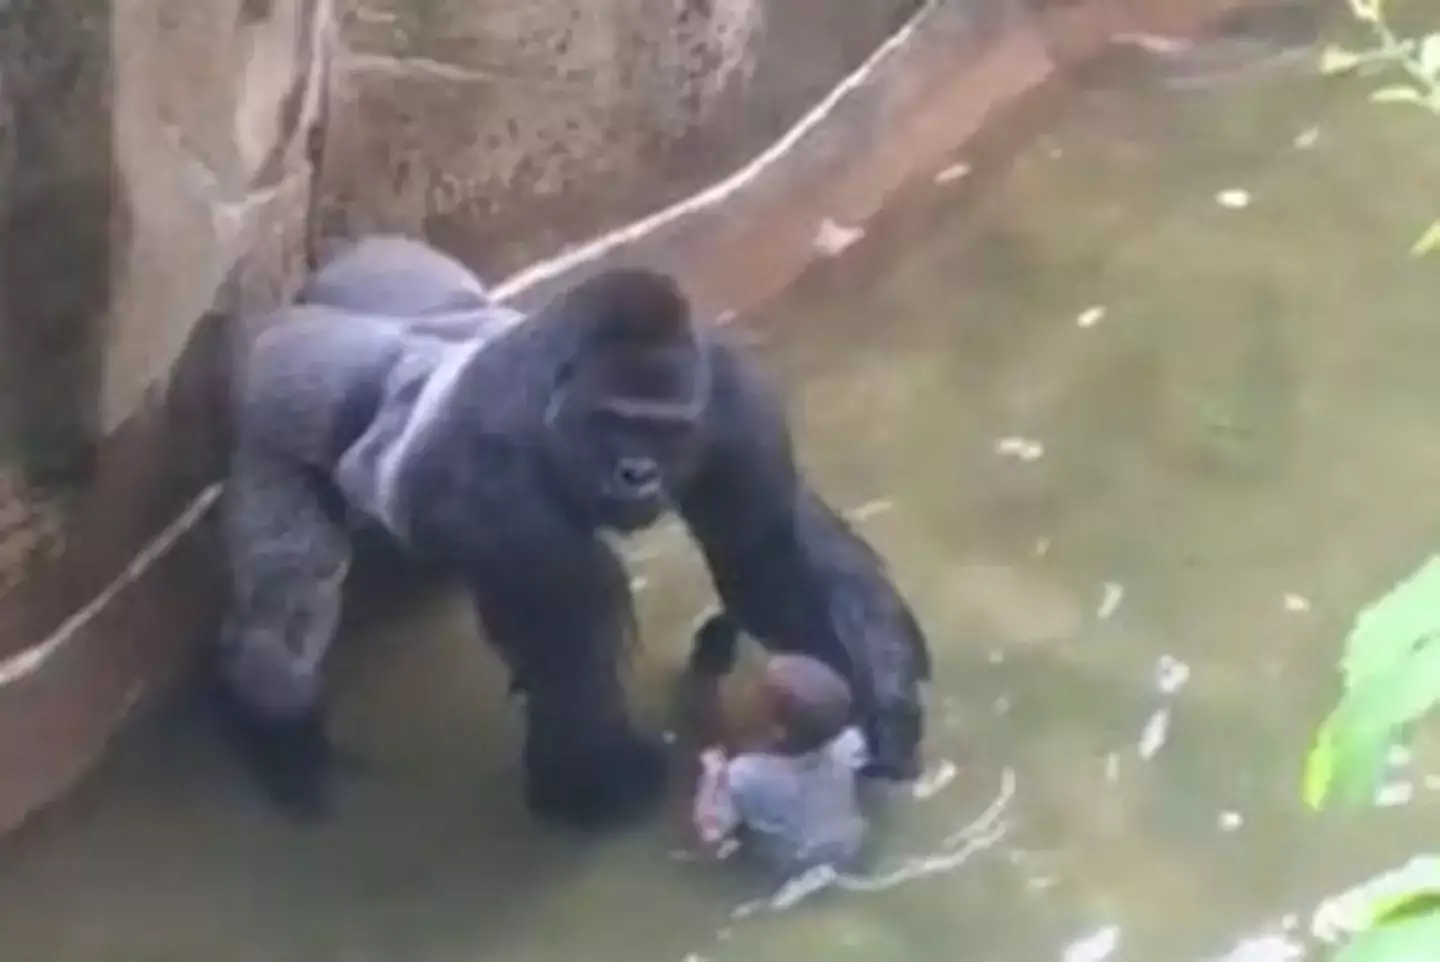 A three-year-old climbed into Harambe's enclosure.